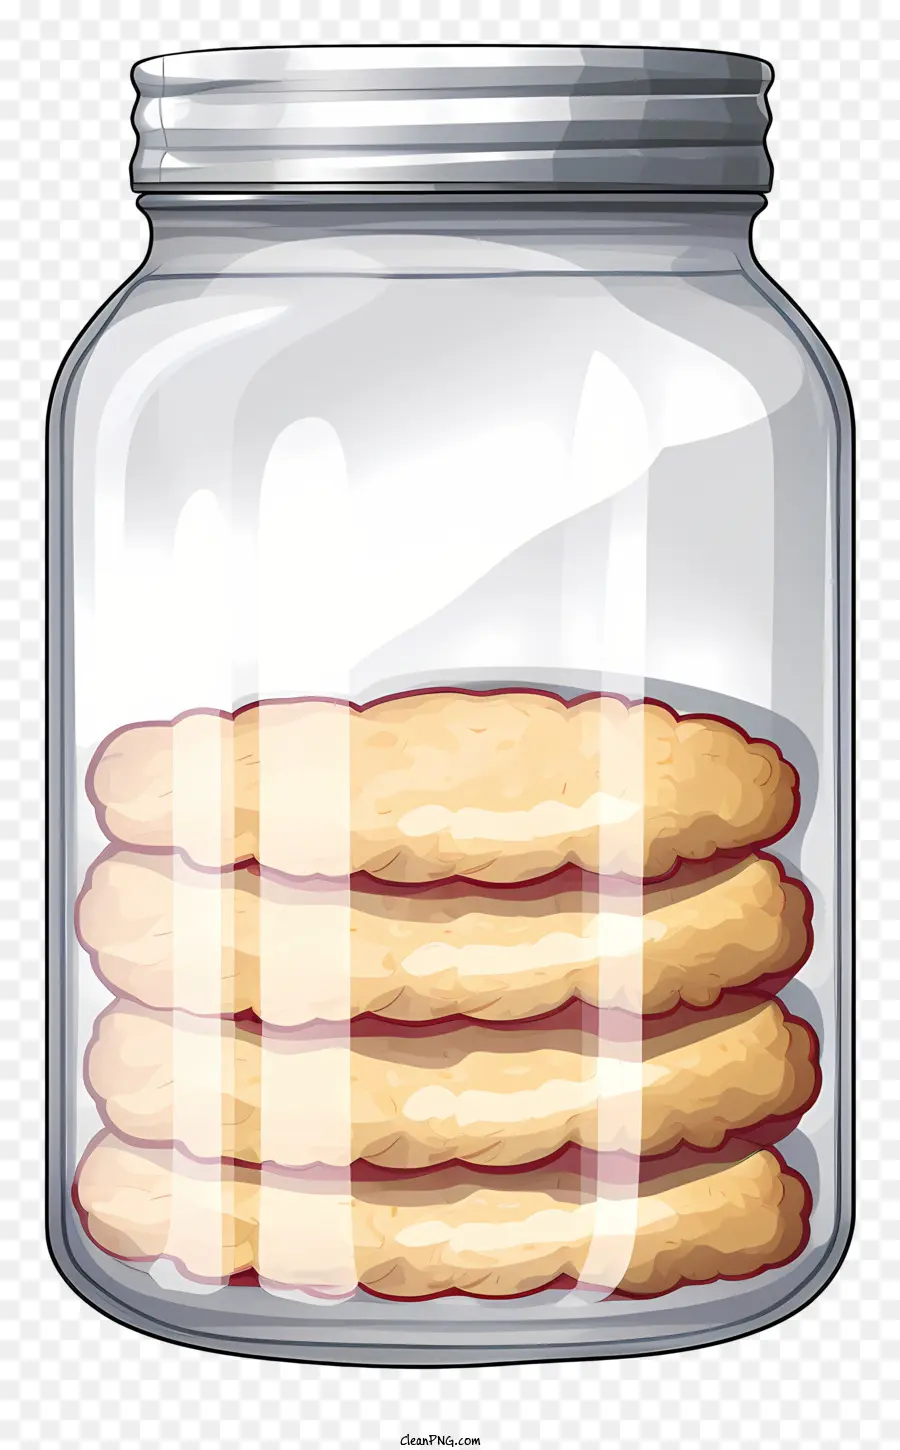 lọ thủy tinh cắt lát bánh quy bánh quy của bánh quy bánh quy hình chữ nhật - Lọ thủy tinh chứa đầy bánh quy được xếp chồng lên nhau